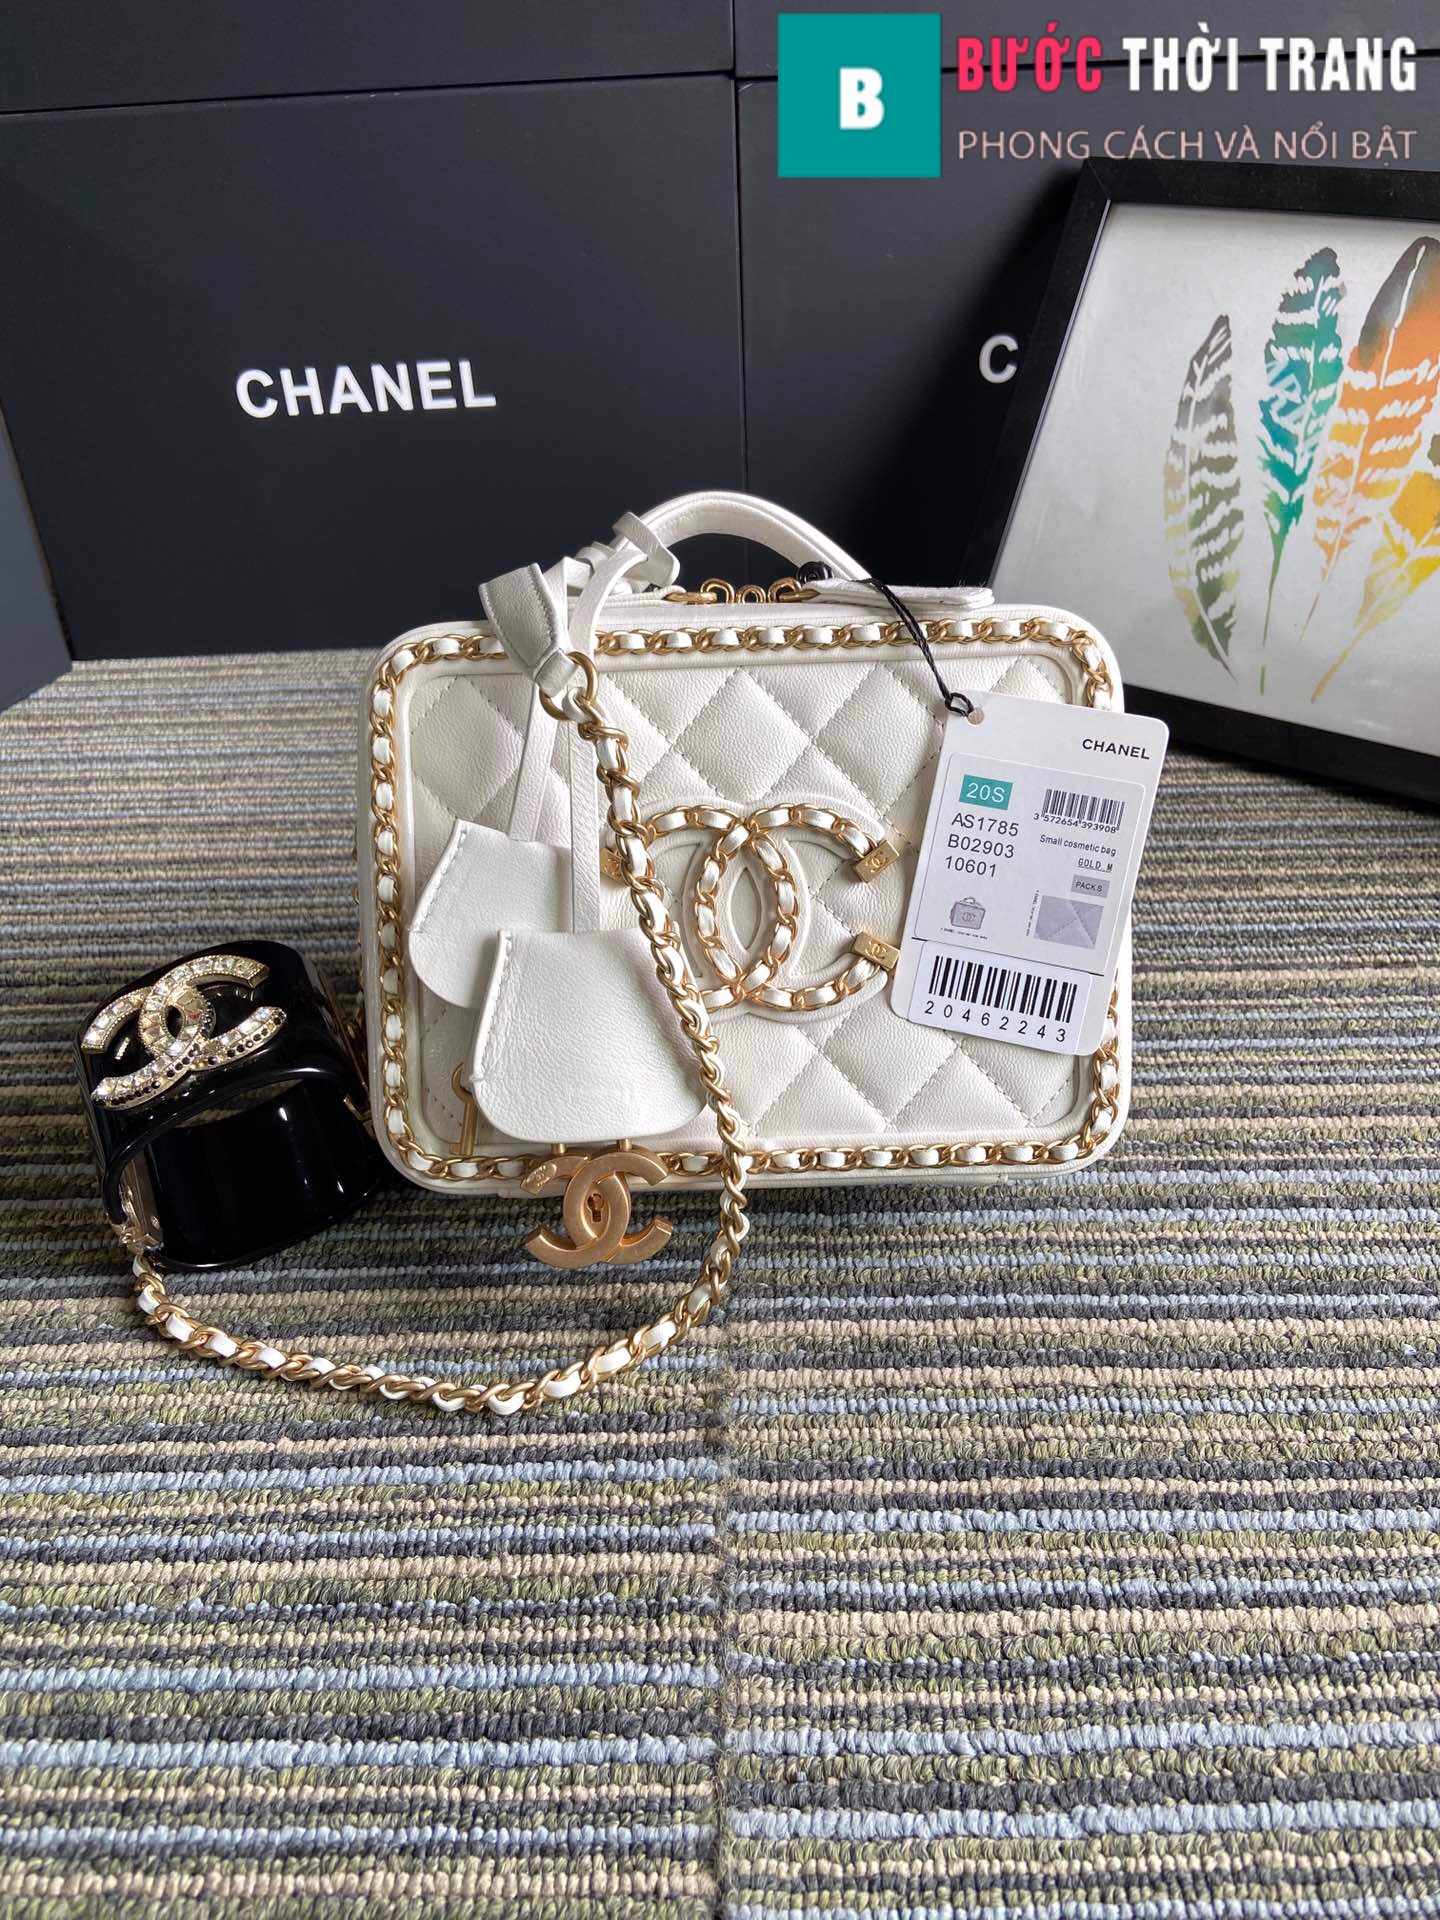 Túi xách Chanel Vanity case bag siêu cấp viền xích màu trắng size